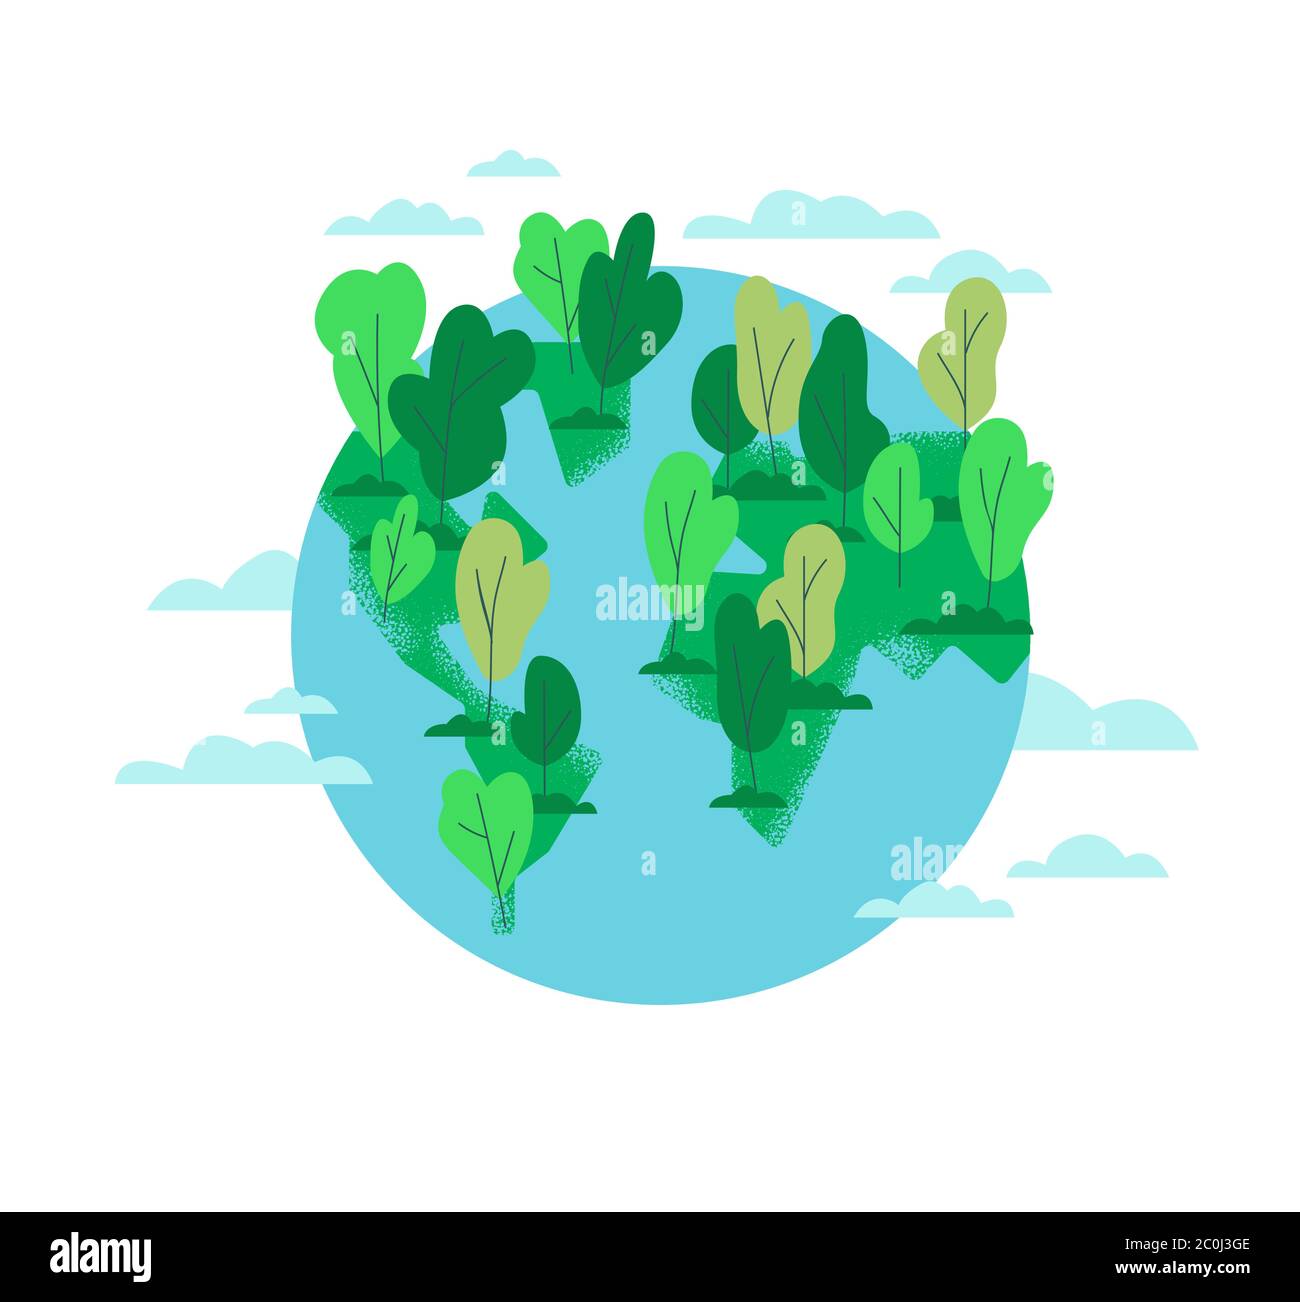 Illustration de dessin animé plat de la Terre de la planète avec forêt d'arbres verts pour l'aide environnementale ou concept écologique sur fond blanc isolé. Illustration de Vecteur